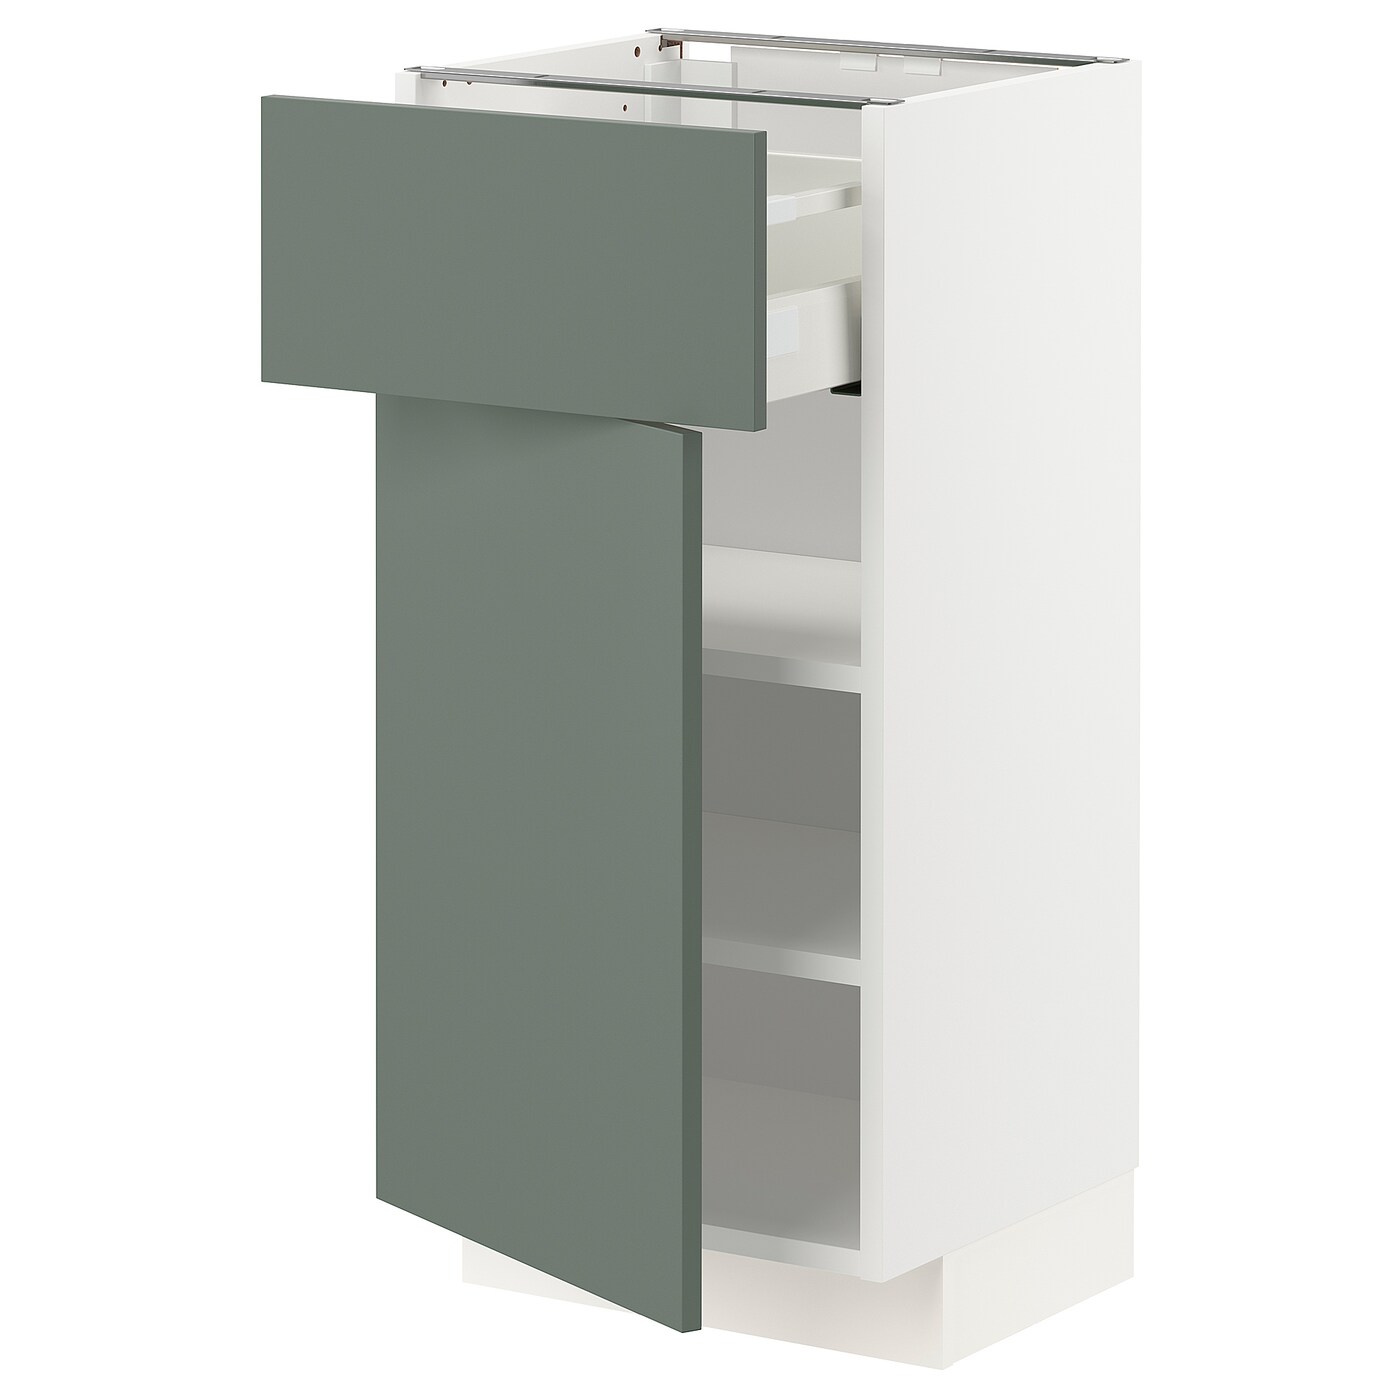 Напольный шкаф - IKEA METOD MAXIMERA, 88x39,2x40см, белый/серо-зеленый, МЕТОД МАКСИМЕРА ИКЕА